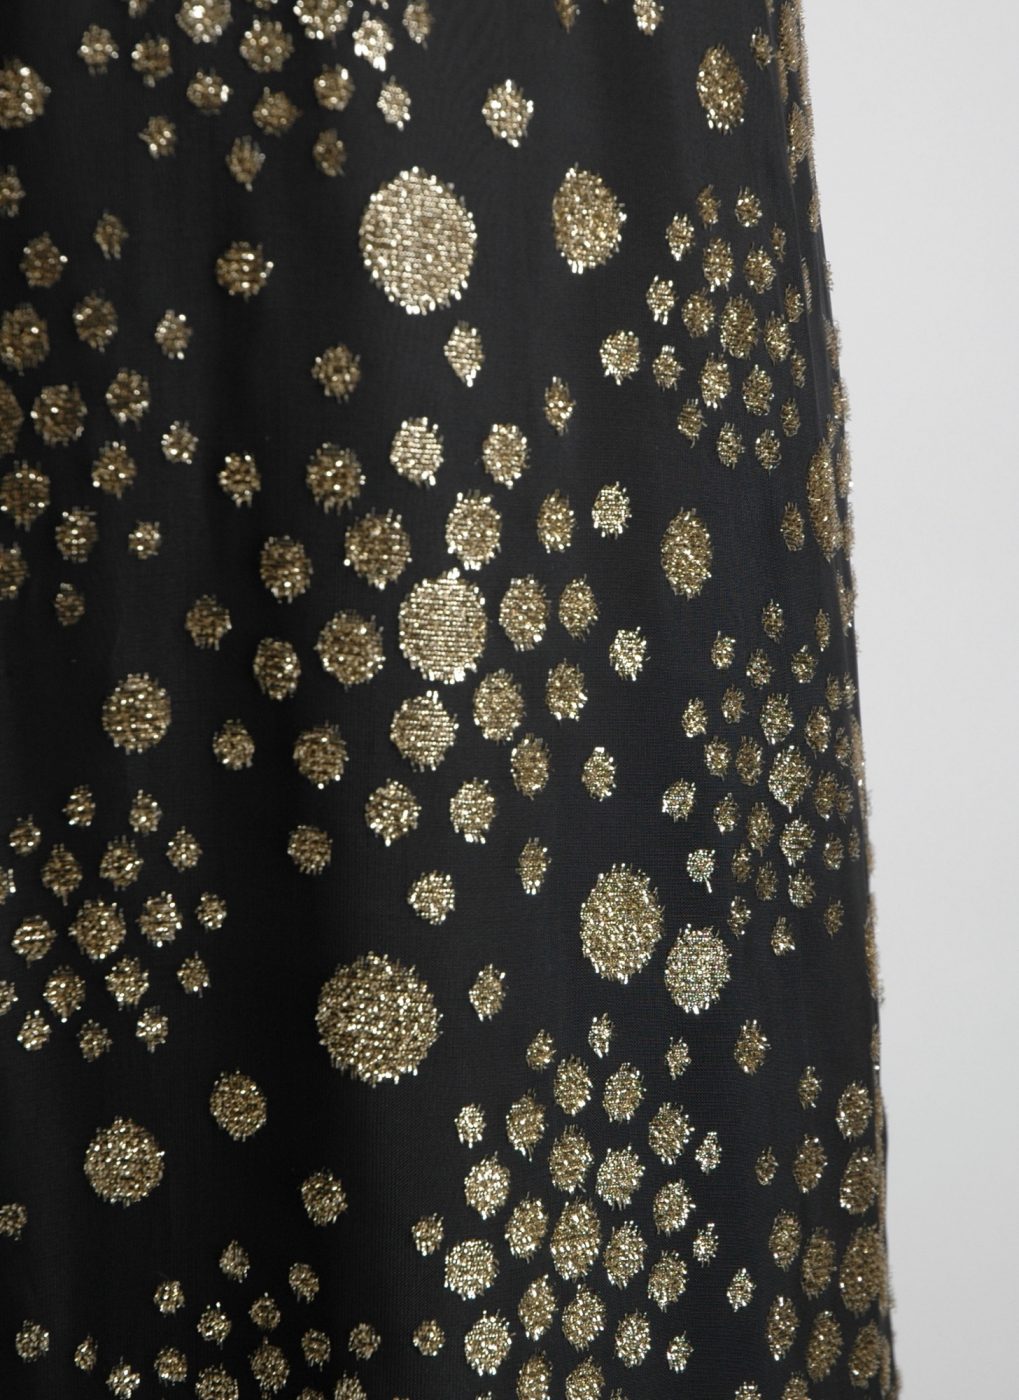 1970s black + gold burnout velvet gown